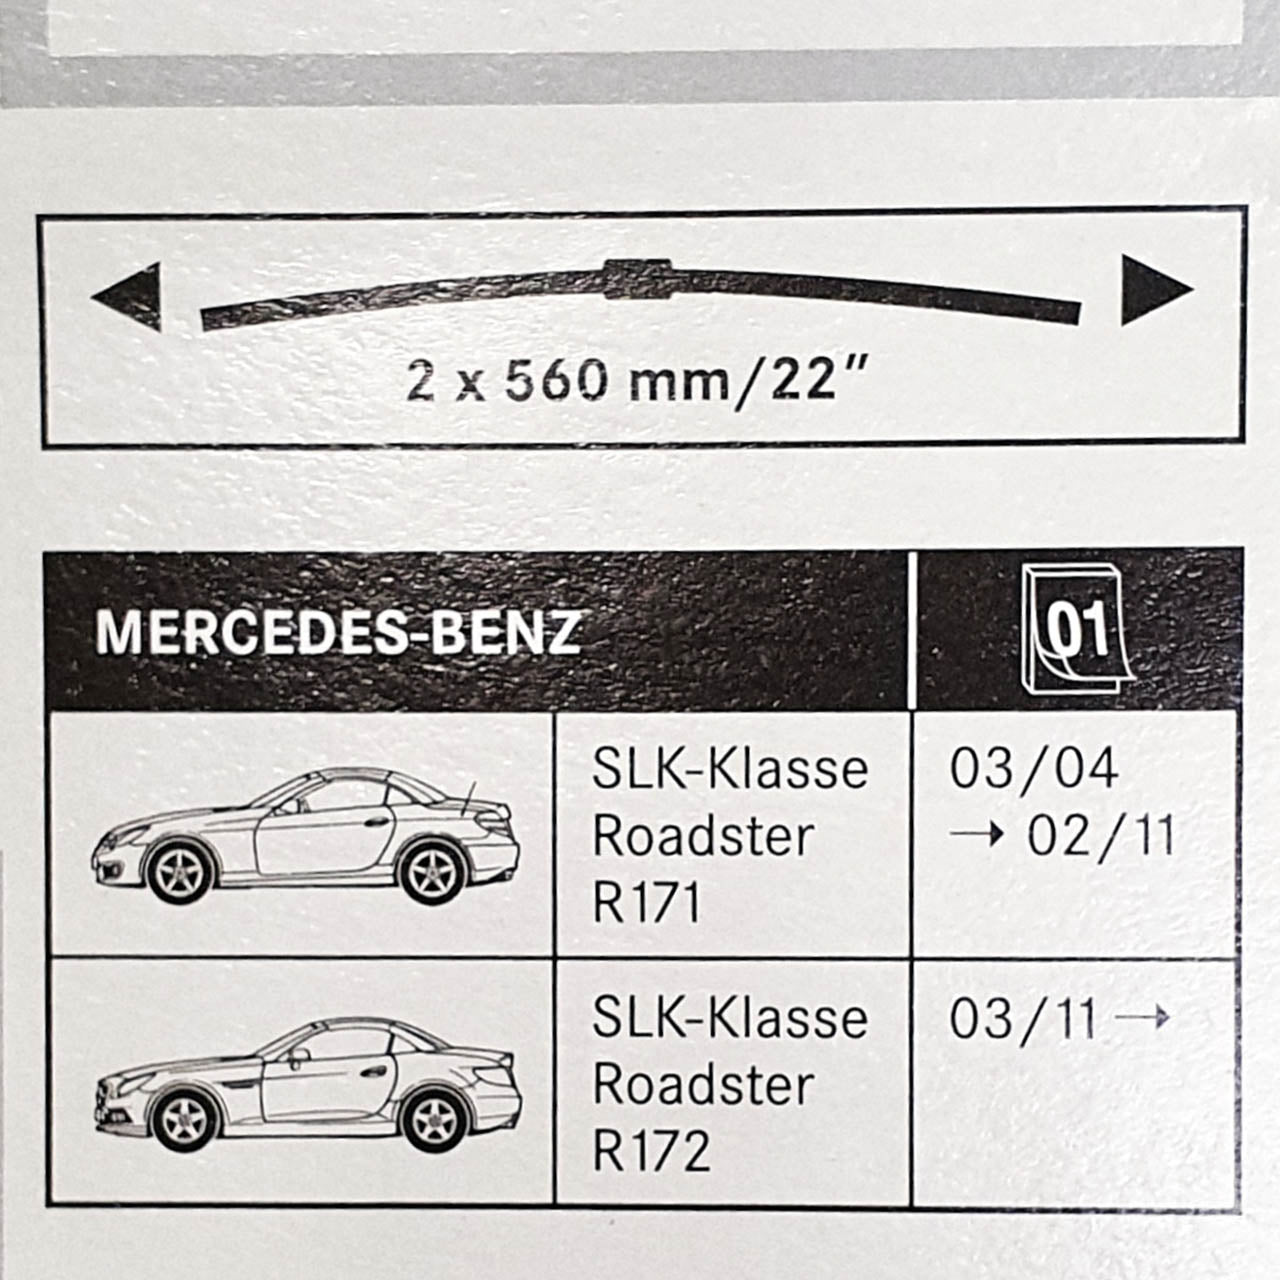 Genuine Mercedes-Benz front wiper Blades SLK 171 and 172 models